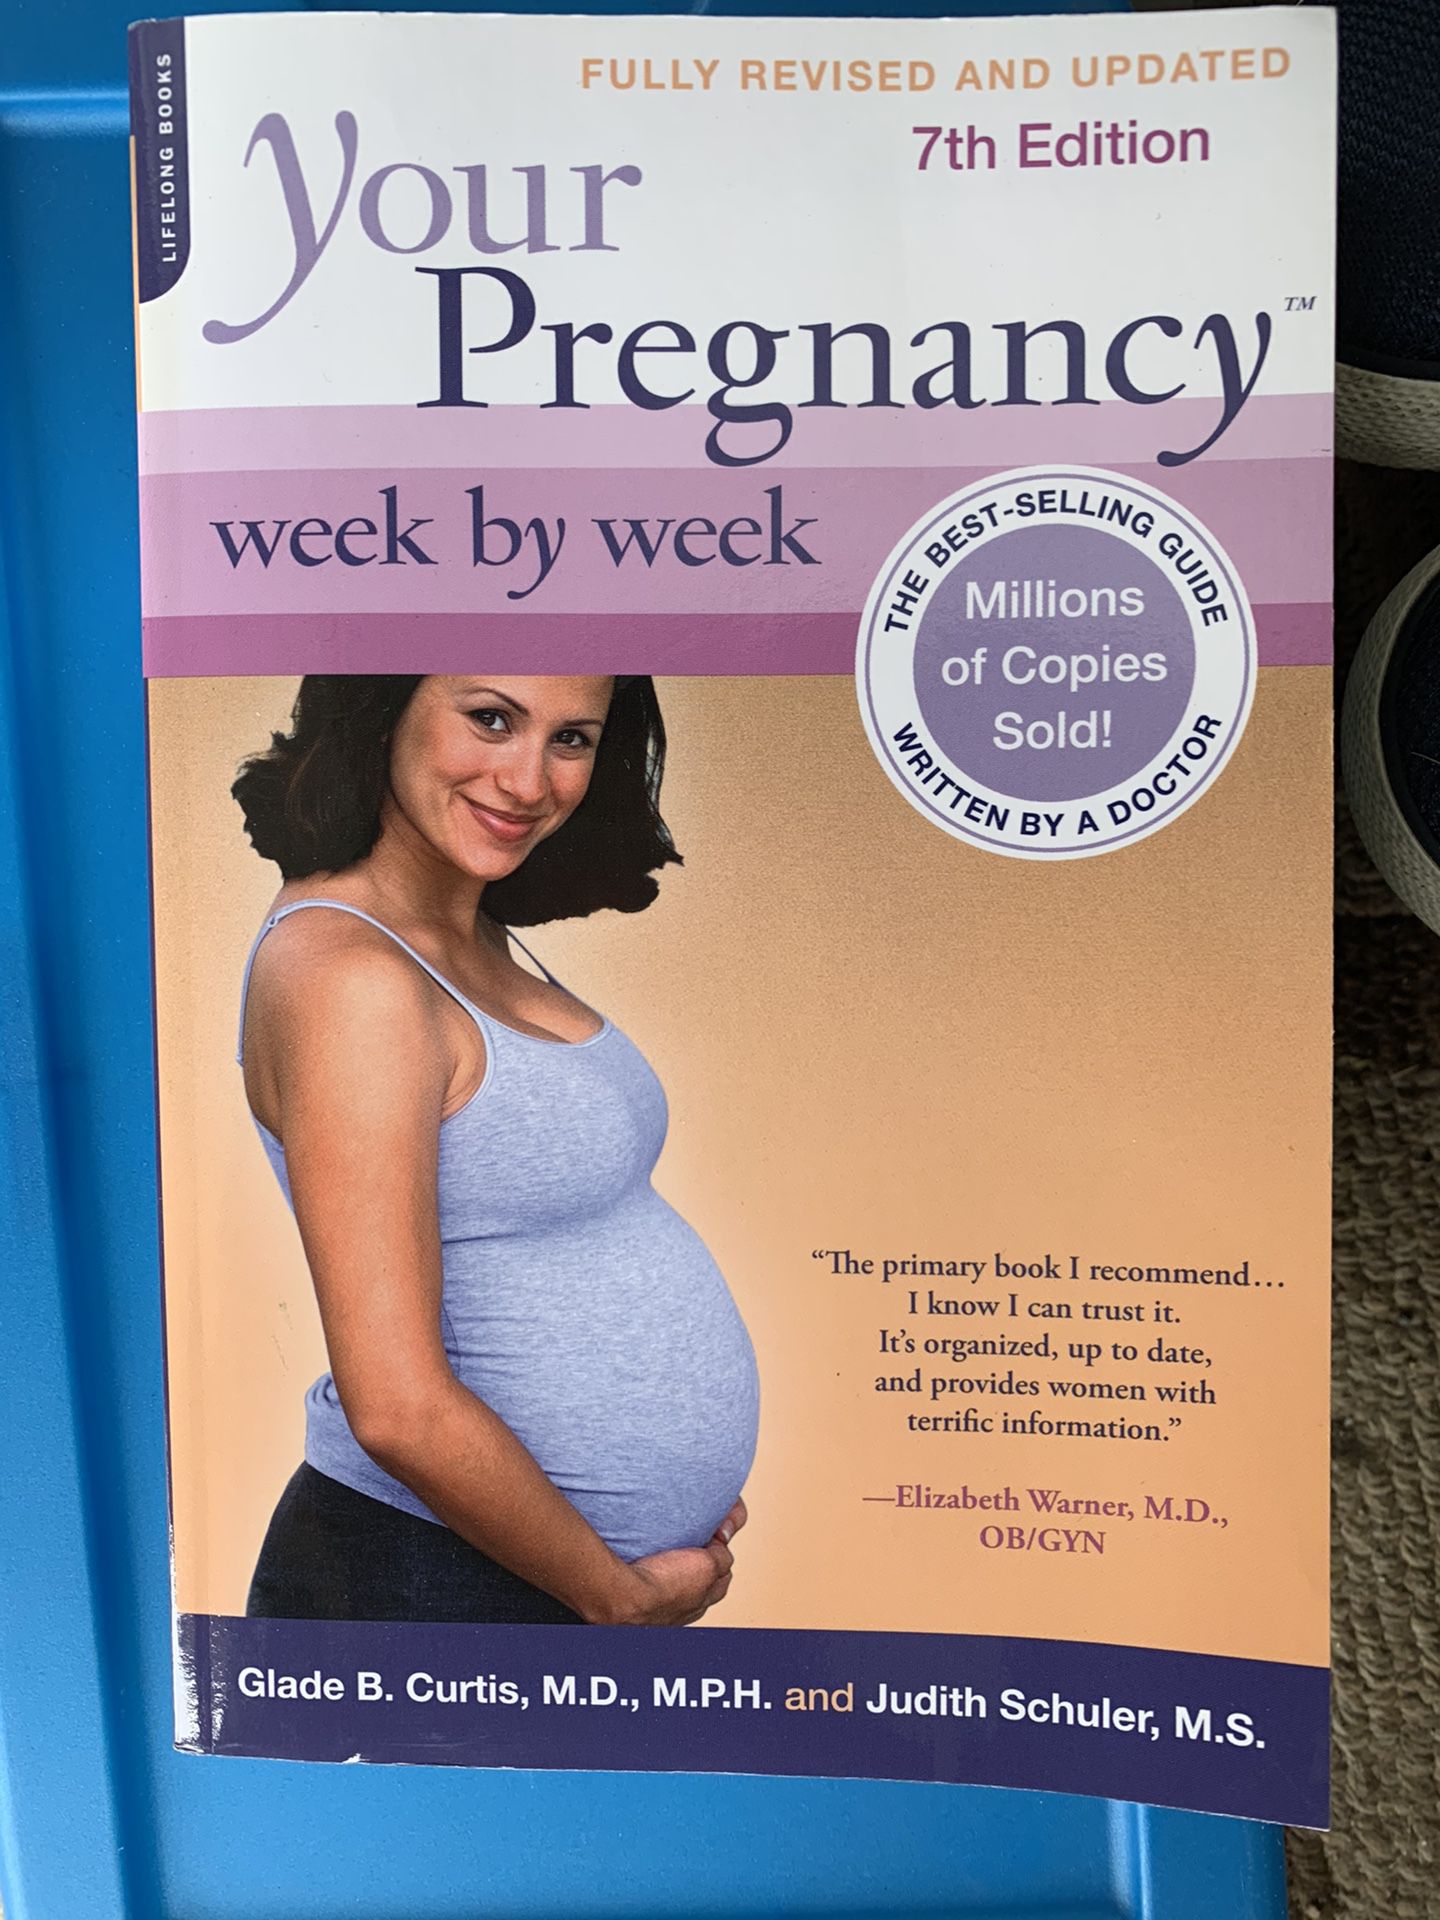 Pregnancy week by week book